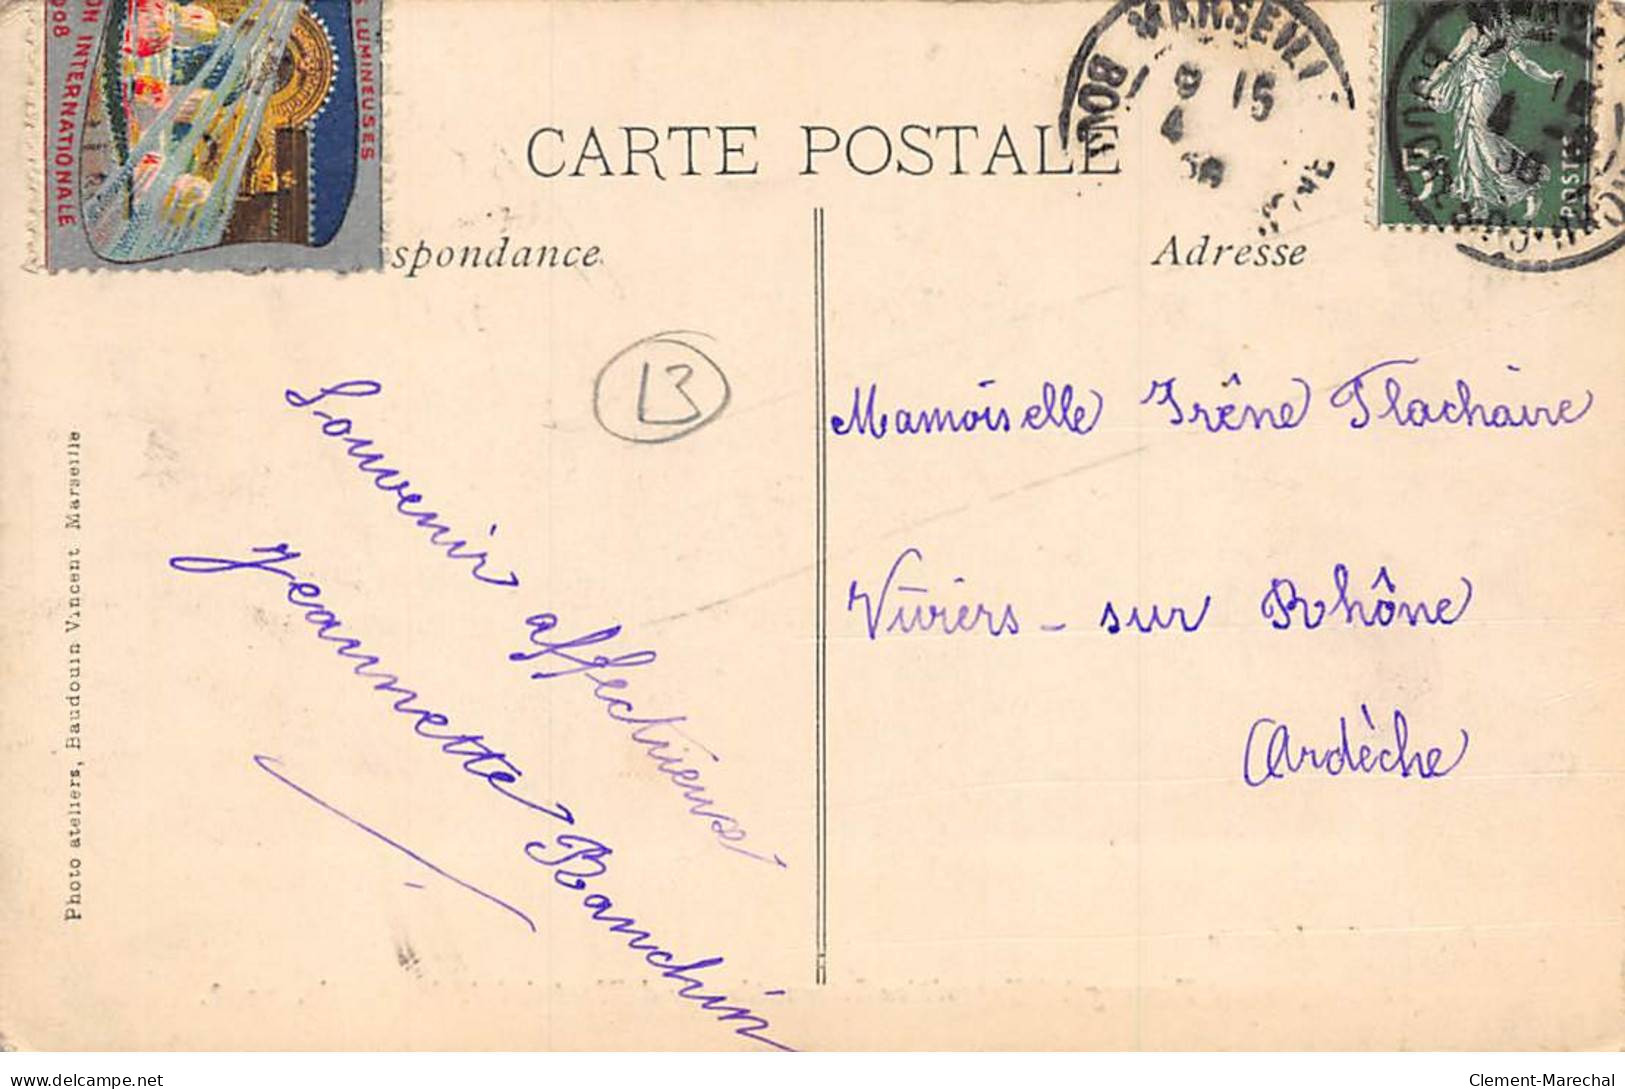 MARSEILLE - 1908 - Le Campement Touareg à L'Exposition Internationale D'Electricité - Très Bon état - Mostra Elettricità E Altre